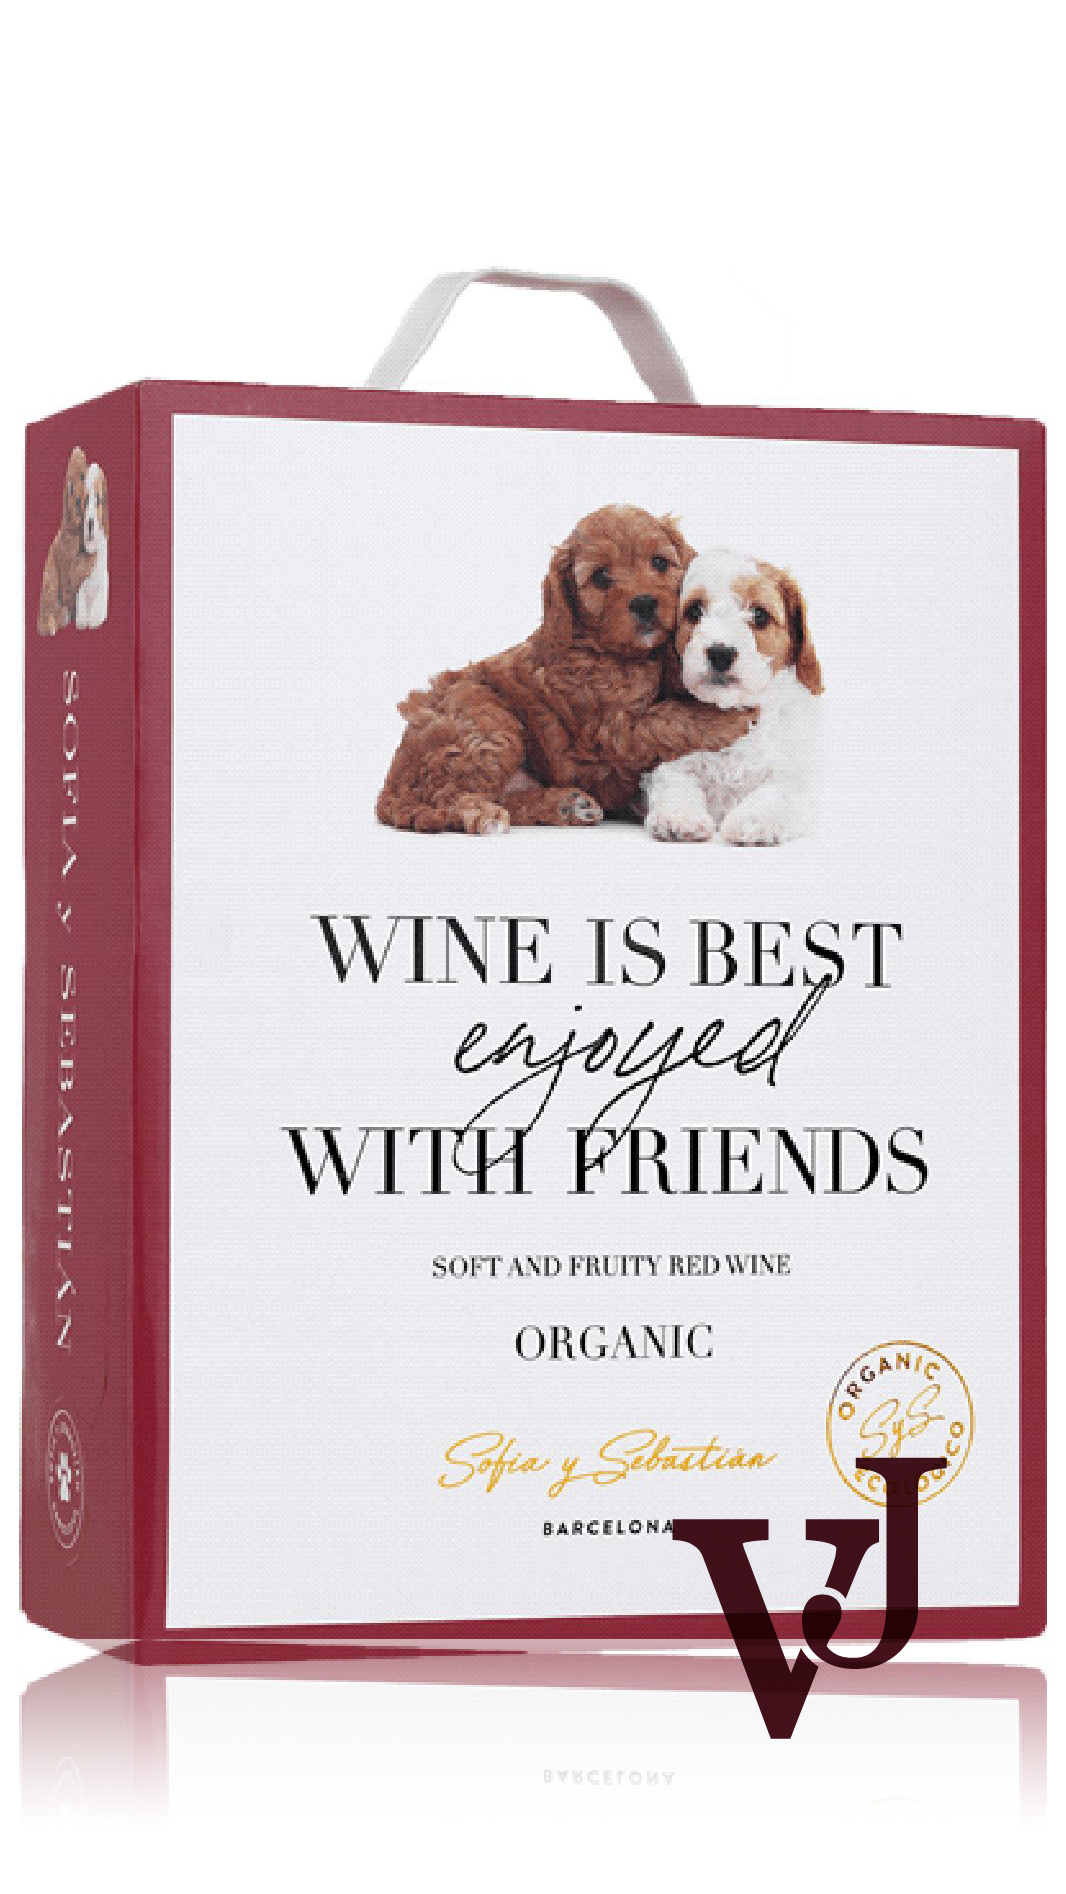 Rött Vin - Sofia y Sebastian Wine is Best Enjoyed with Friends Organic artikel nummer 7817408 från producenten Vinimundi från området Spanien